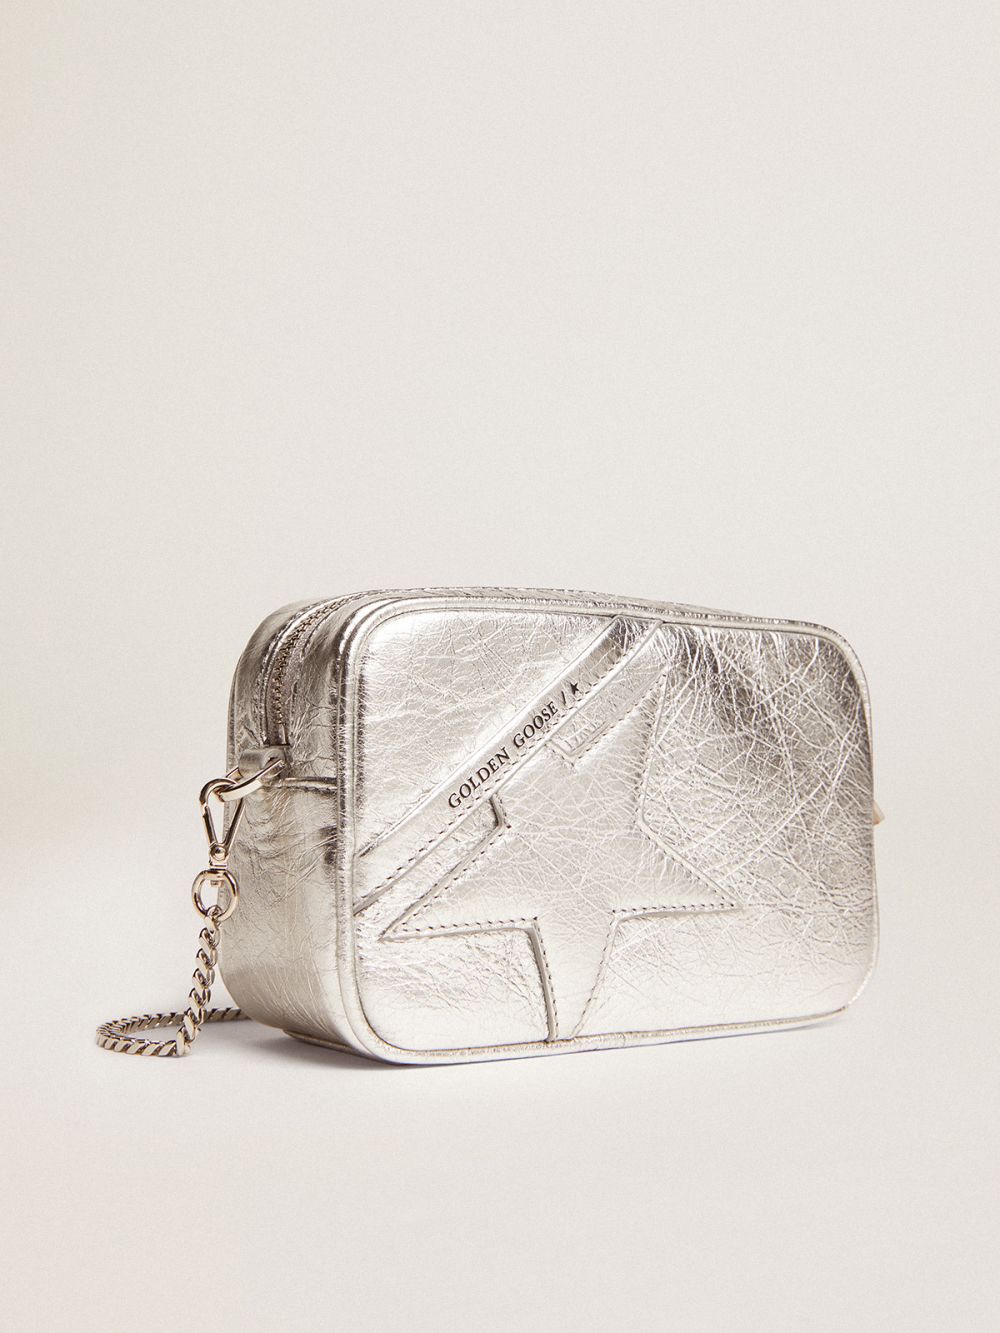 Golden Goose Mini Star Bag in silver